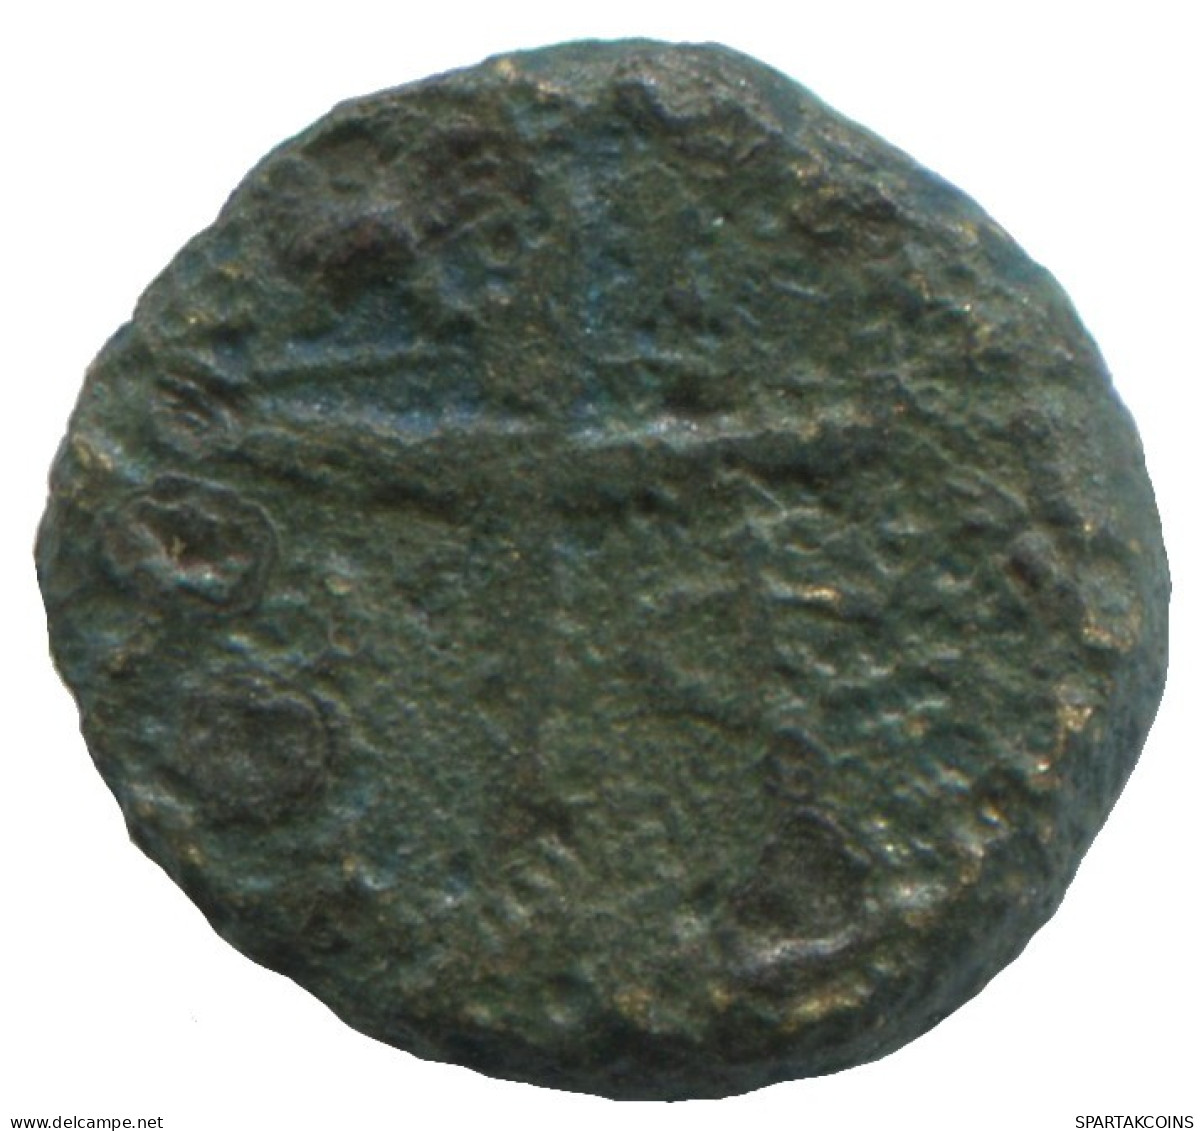 Auténtico ORIGINAL GRIEGO ANTIGUO Moneda 1.4g/11mm #ANN1052.24.E.A - Grecques